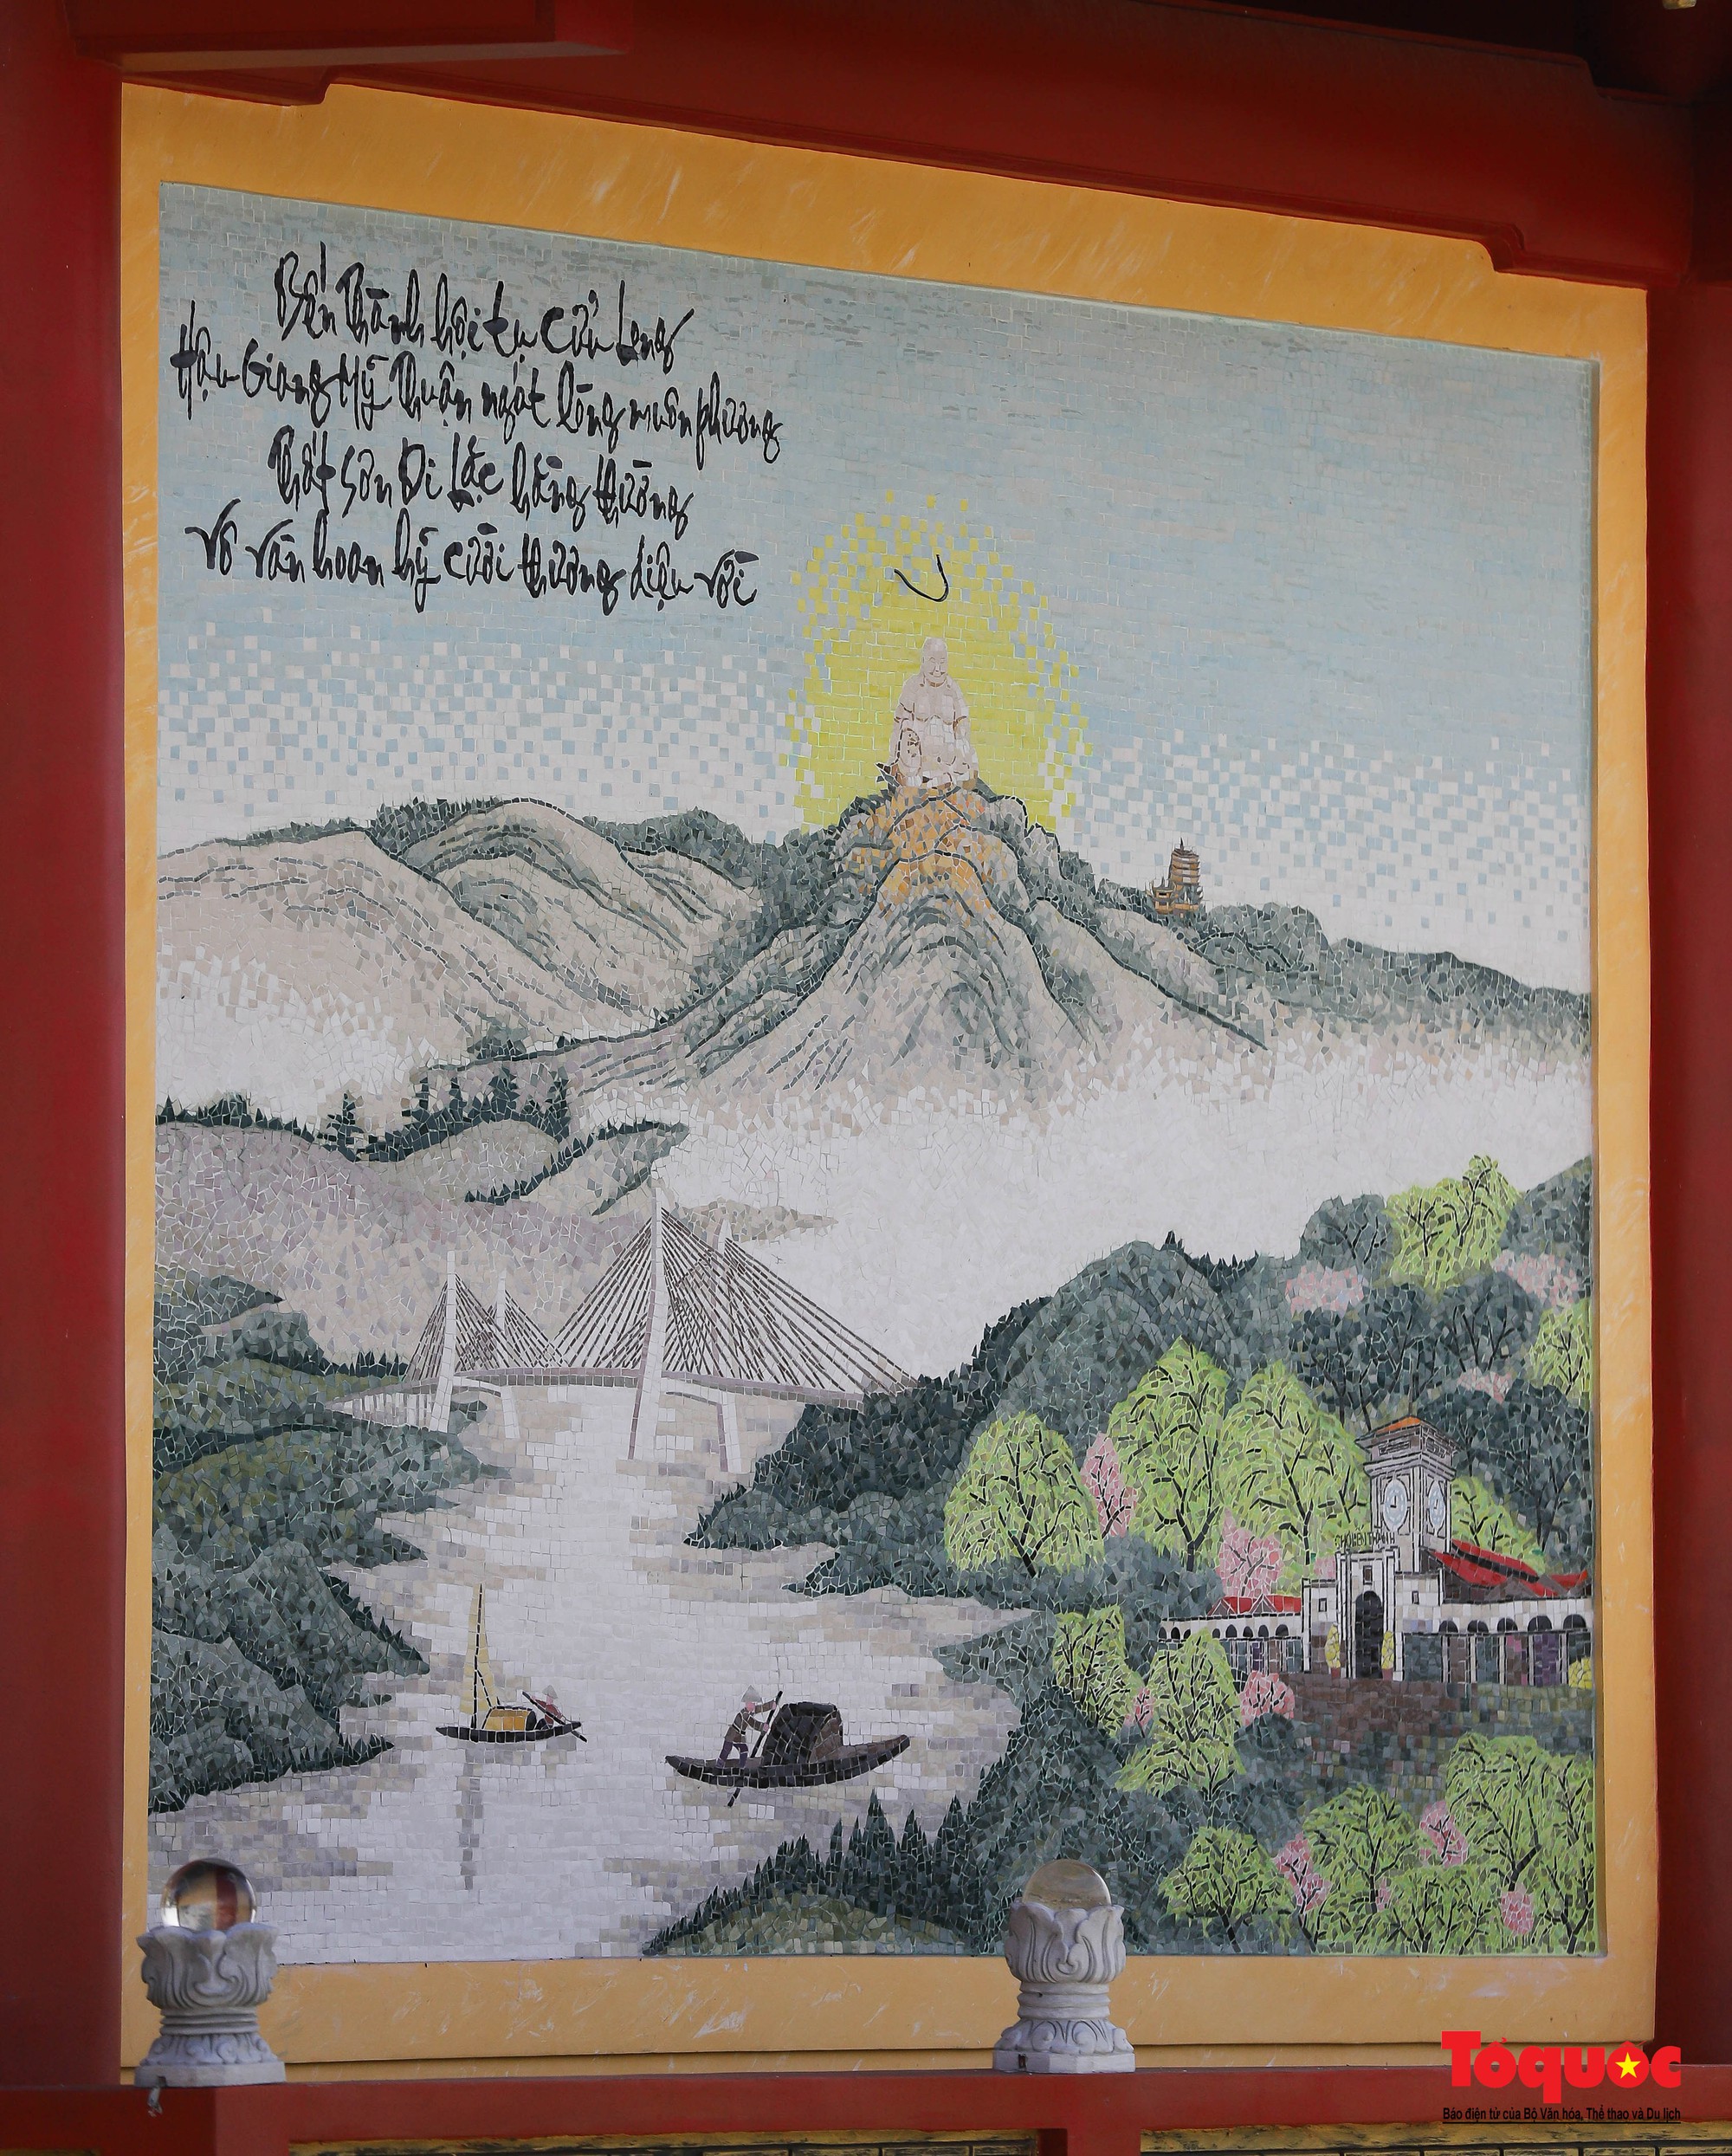 Cận cảnh 16 bức tranh sứ độc bản trên tường vừa được xác lập kỷ lục Việt Nam - Ảnh 8.